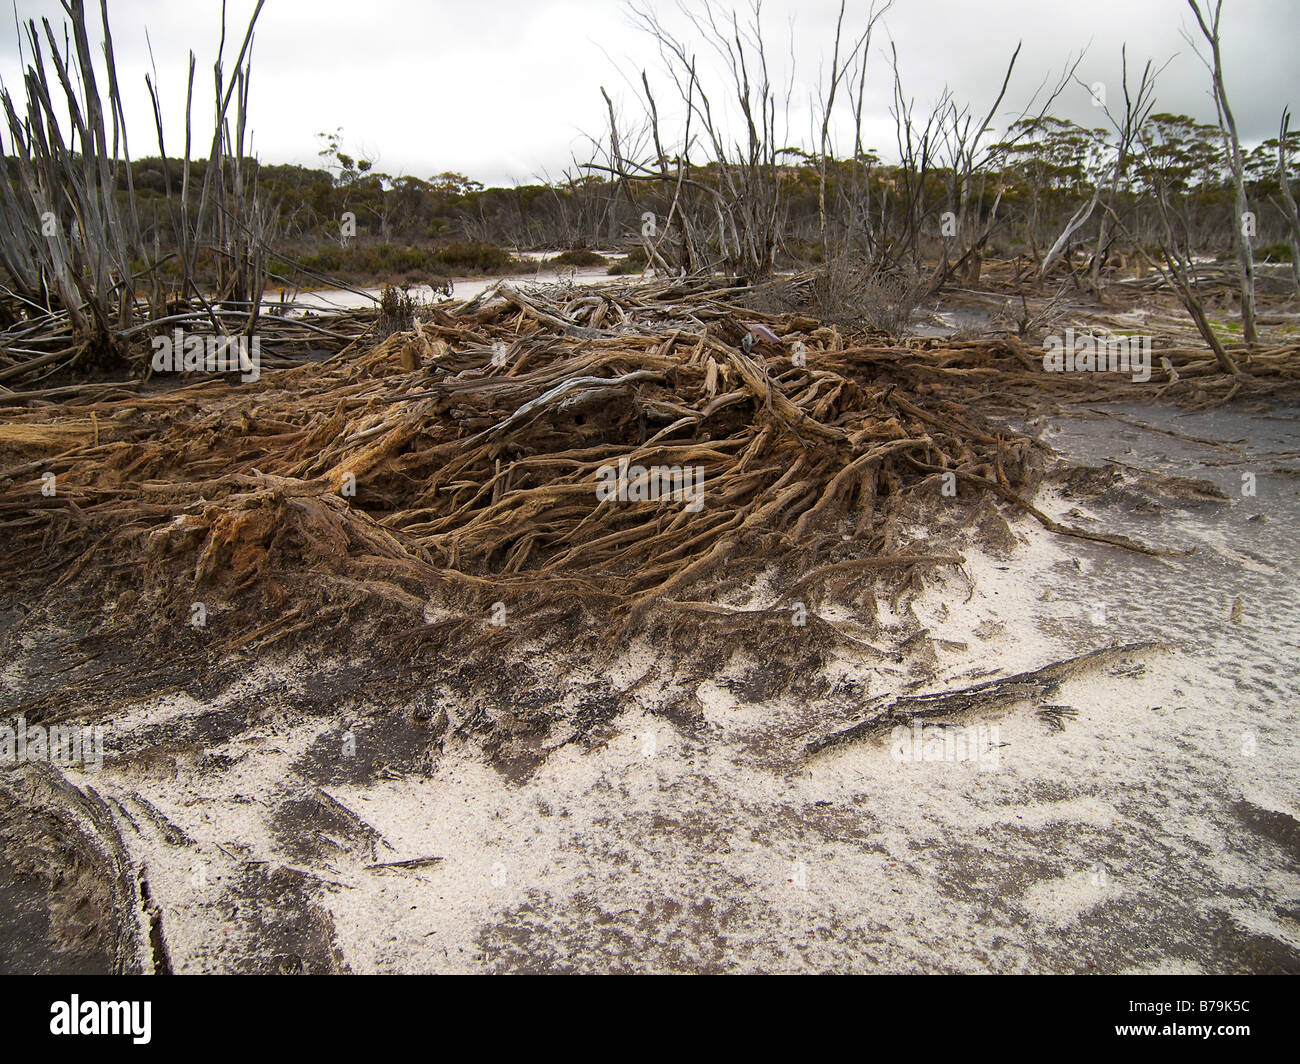 Le bois mort causée par le lessivage du sel dans la terre Banque D'Images